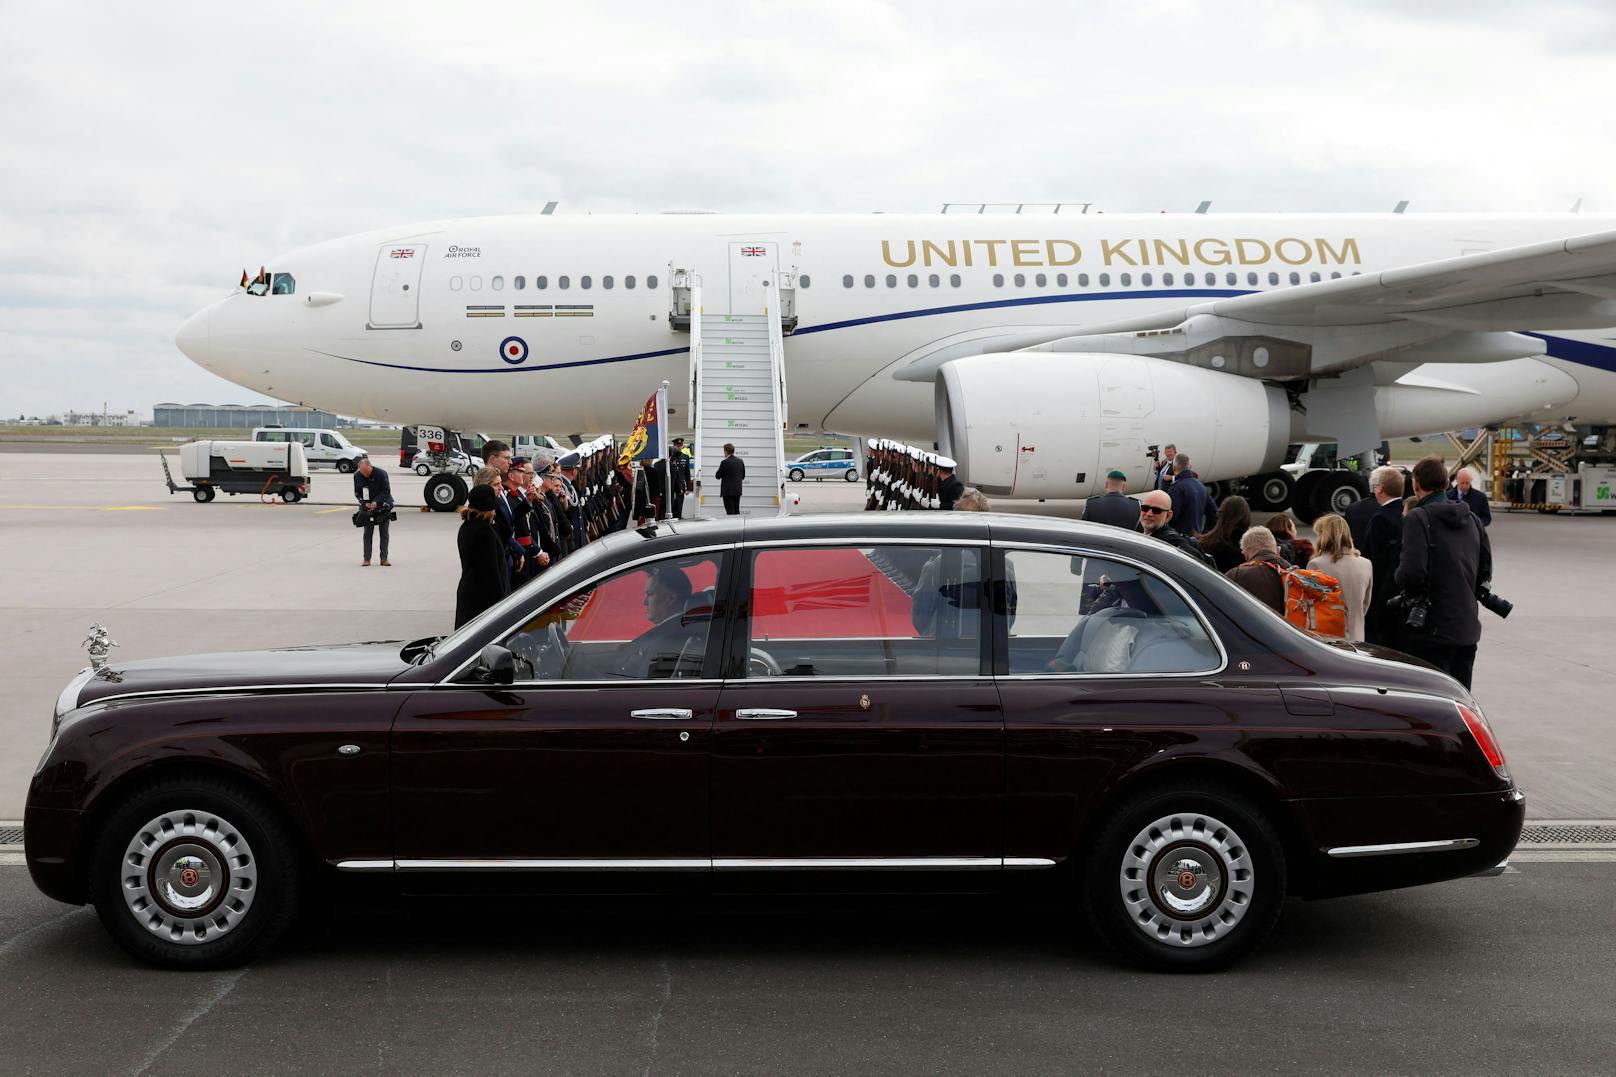 Charles und Camilla kamen mit ihrem eindrucksvollen Flugzeug an. Davor wartete bereits ihr Wagen auf die beiden Royals.